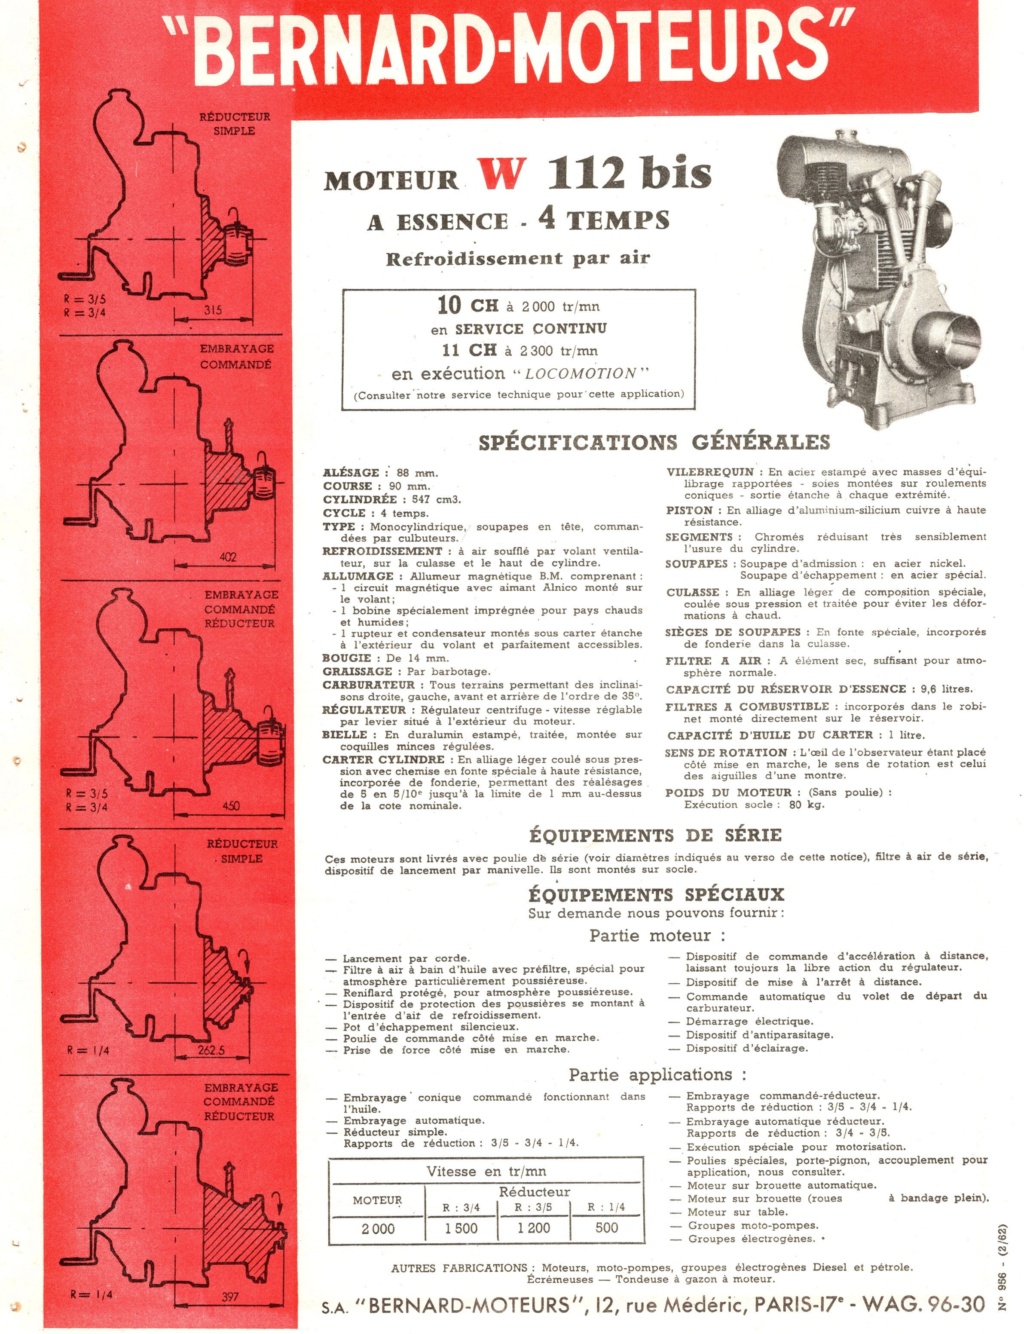 BERNARD-MOTEURS W112 - W112 Bis  Img20394